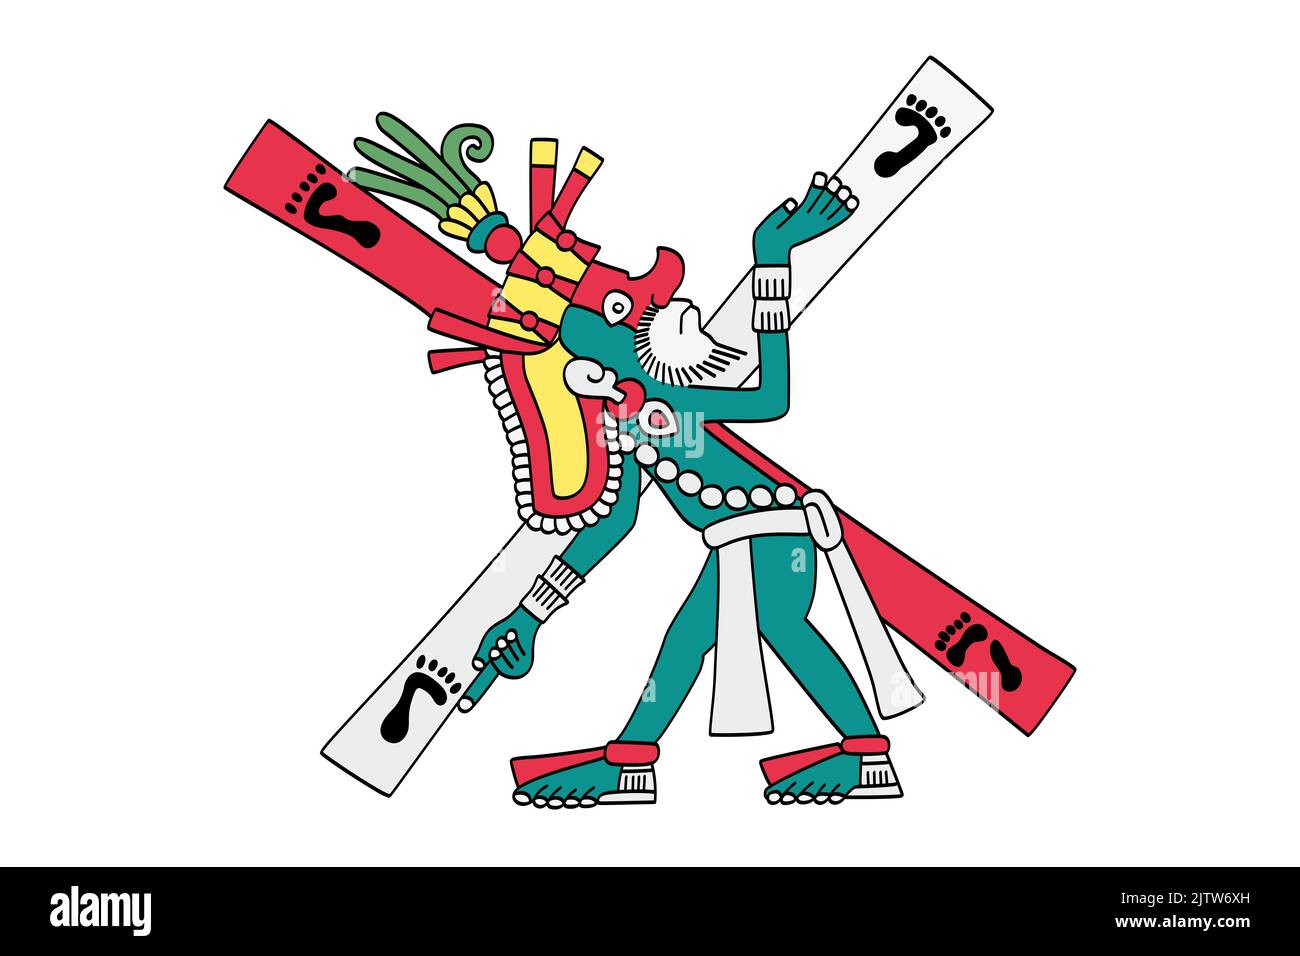 Xolotl en un cruce de caminos. dios azteca de fuego, relámpagos, monstruos, desgracia, enfermedad y deformidades. Asociado con el fuego celestial. Foto de stock